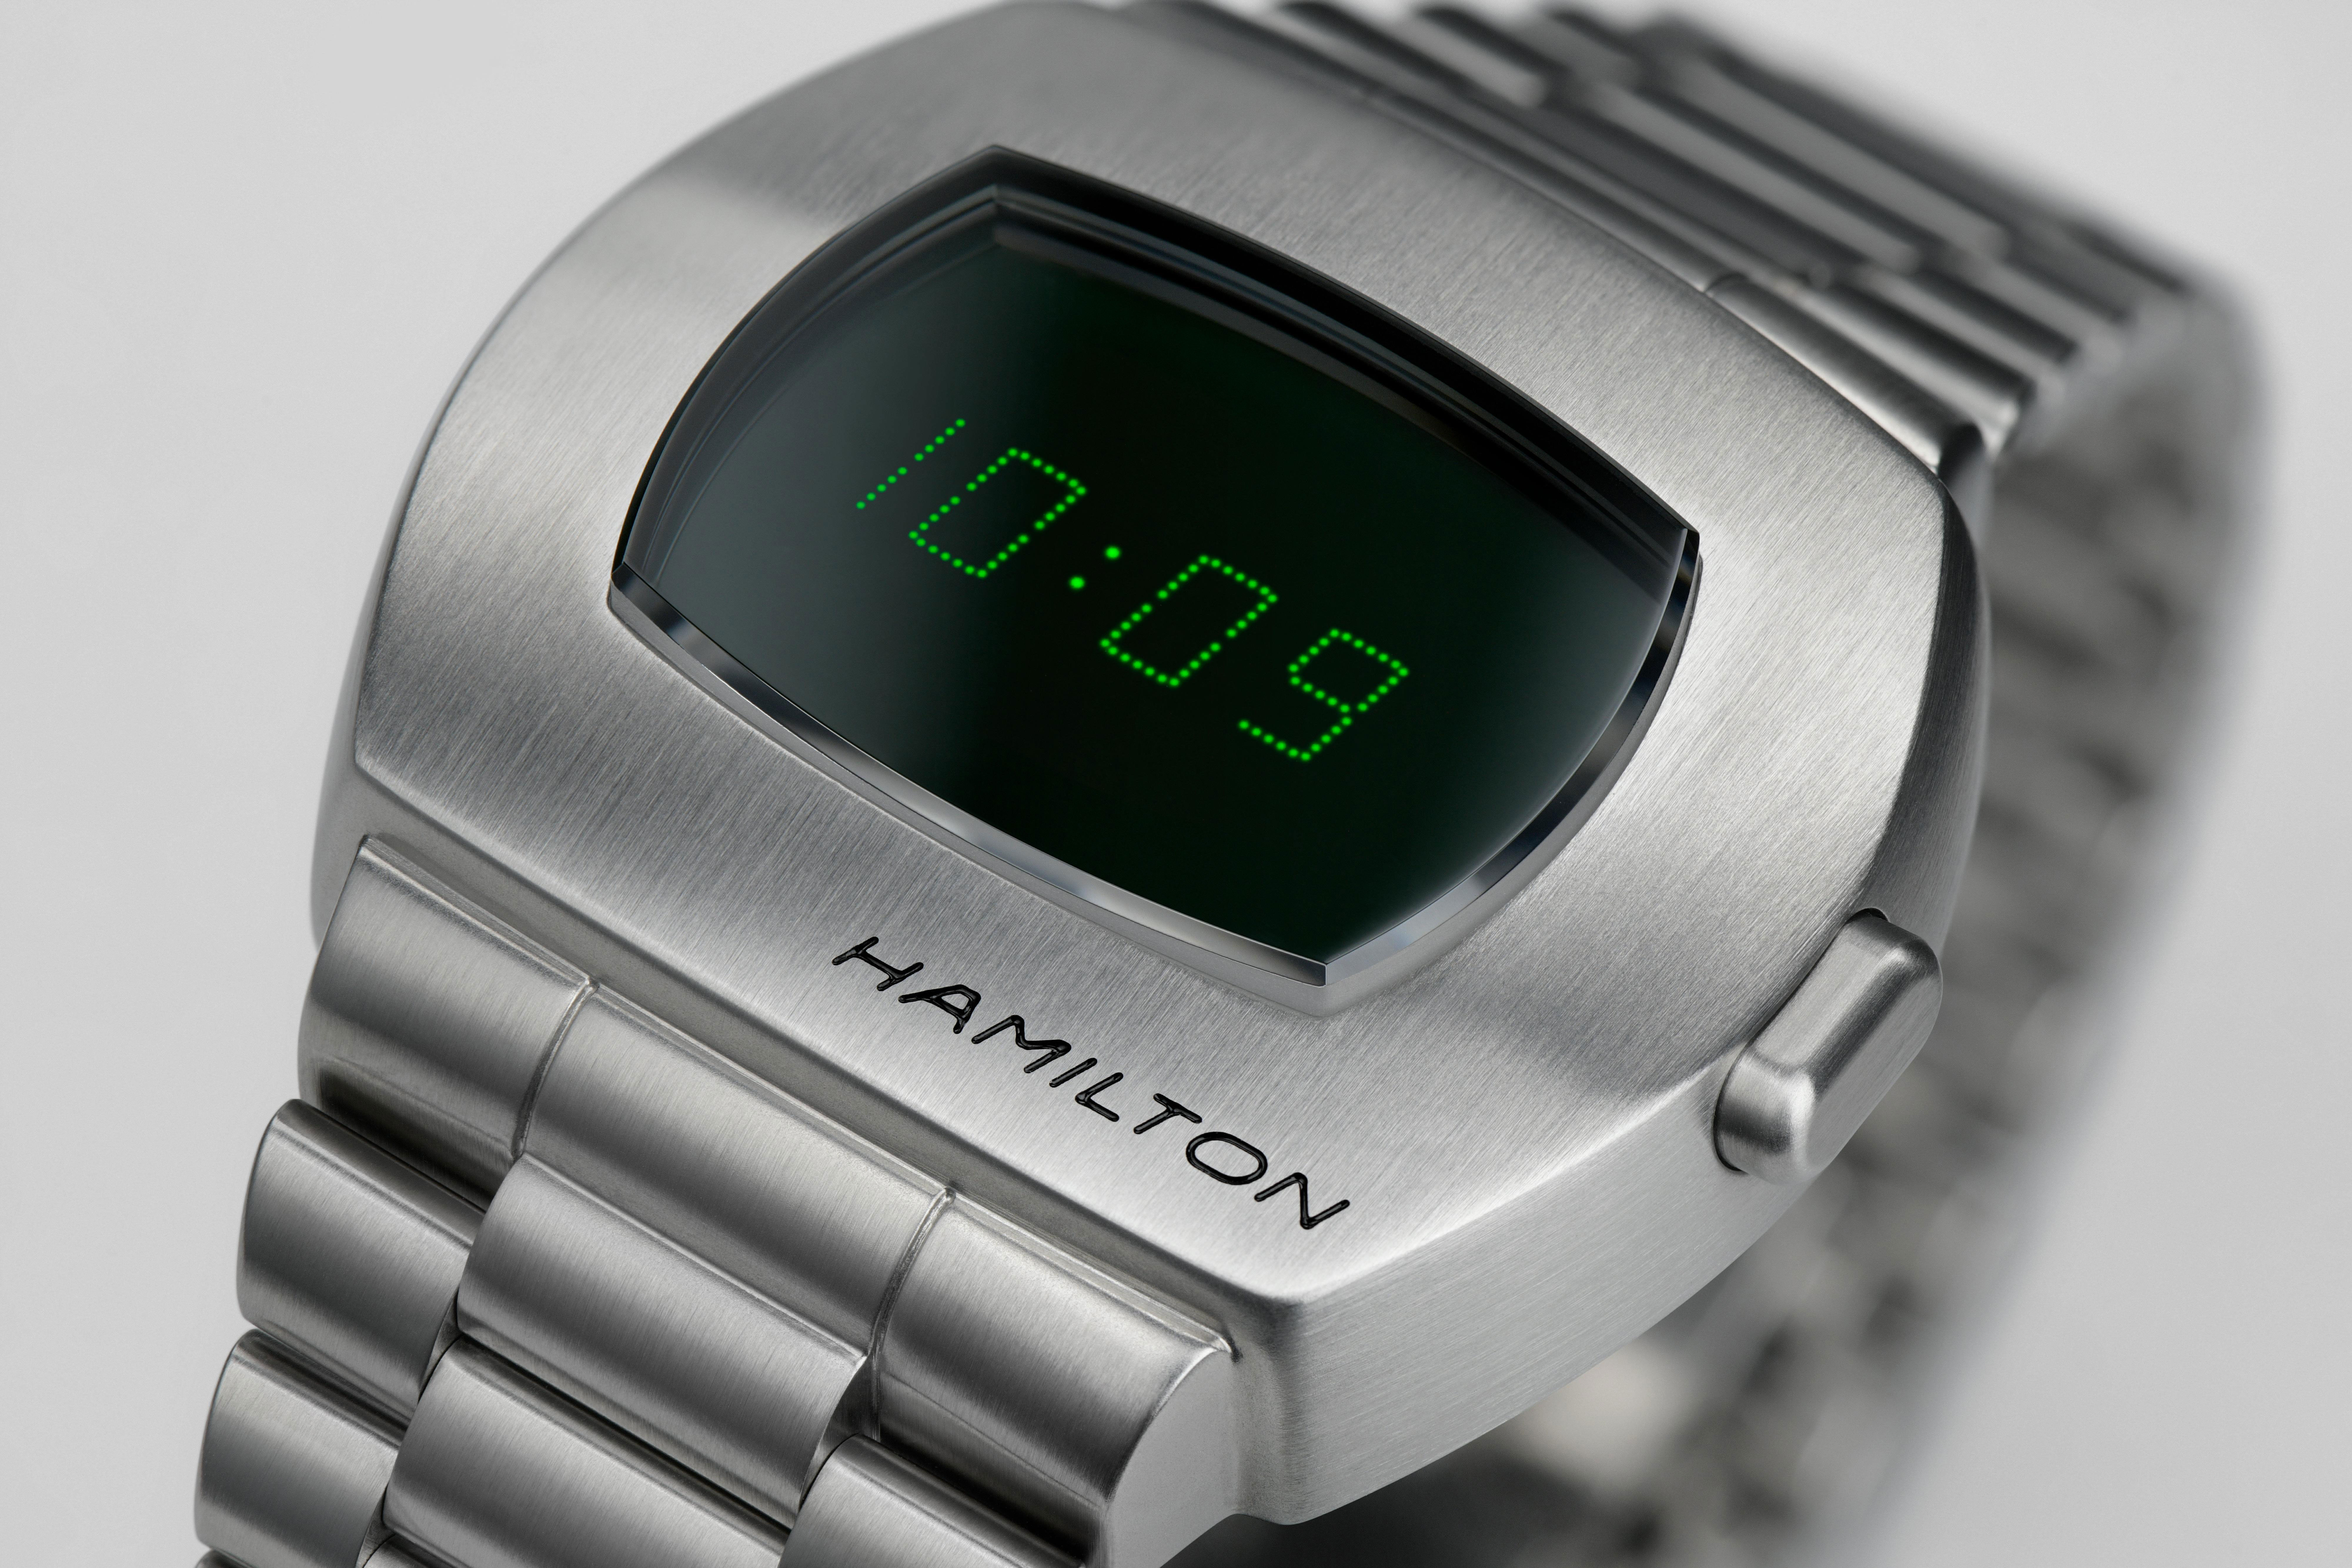 Hamilton American Classic PSR Digital Quartz Watch Black Dial, 40.8mm